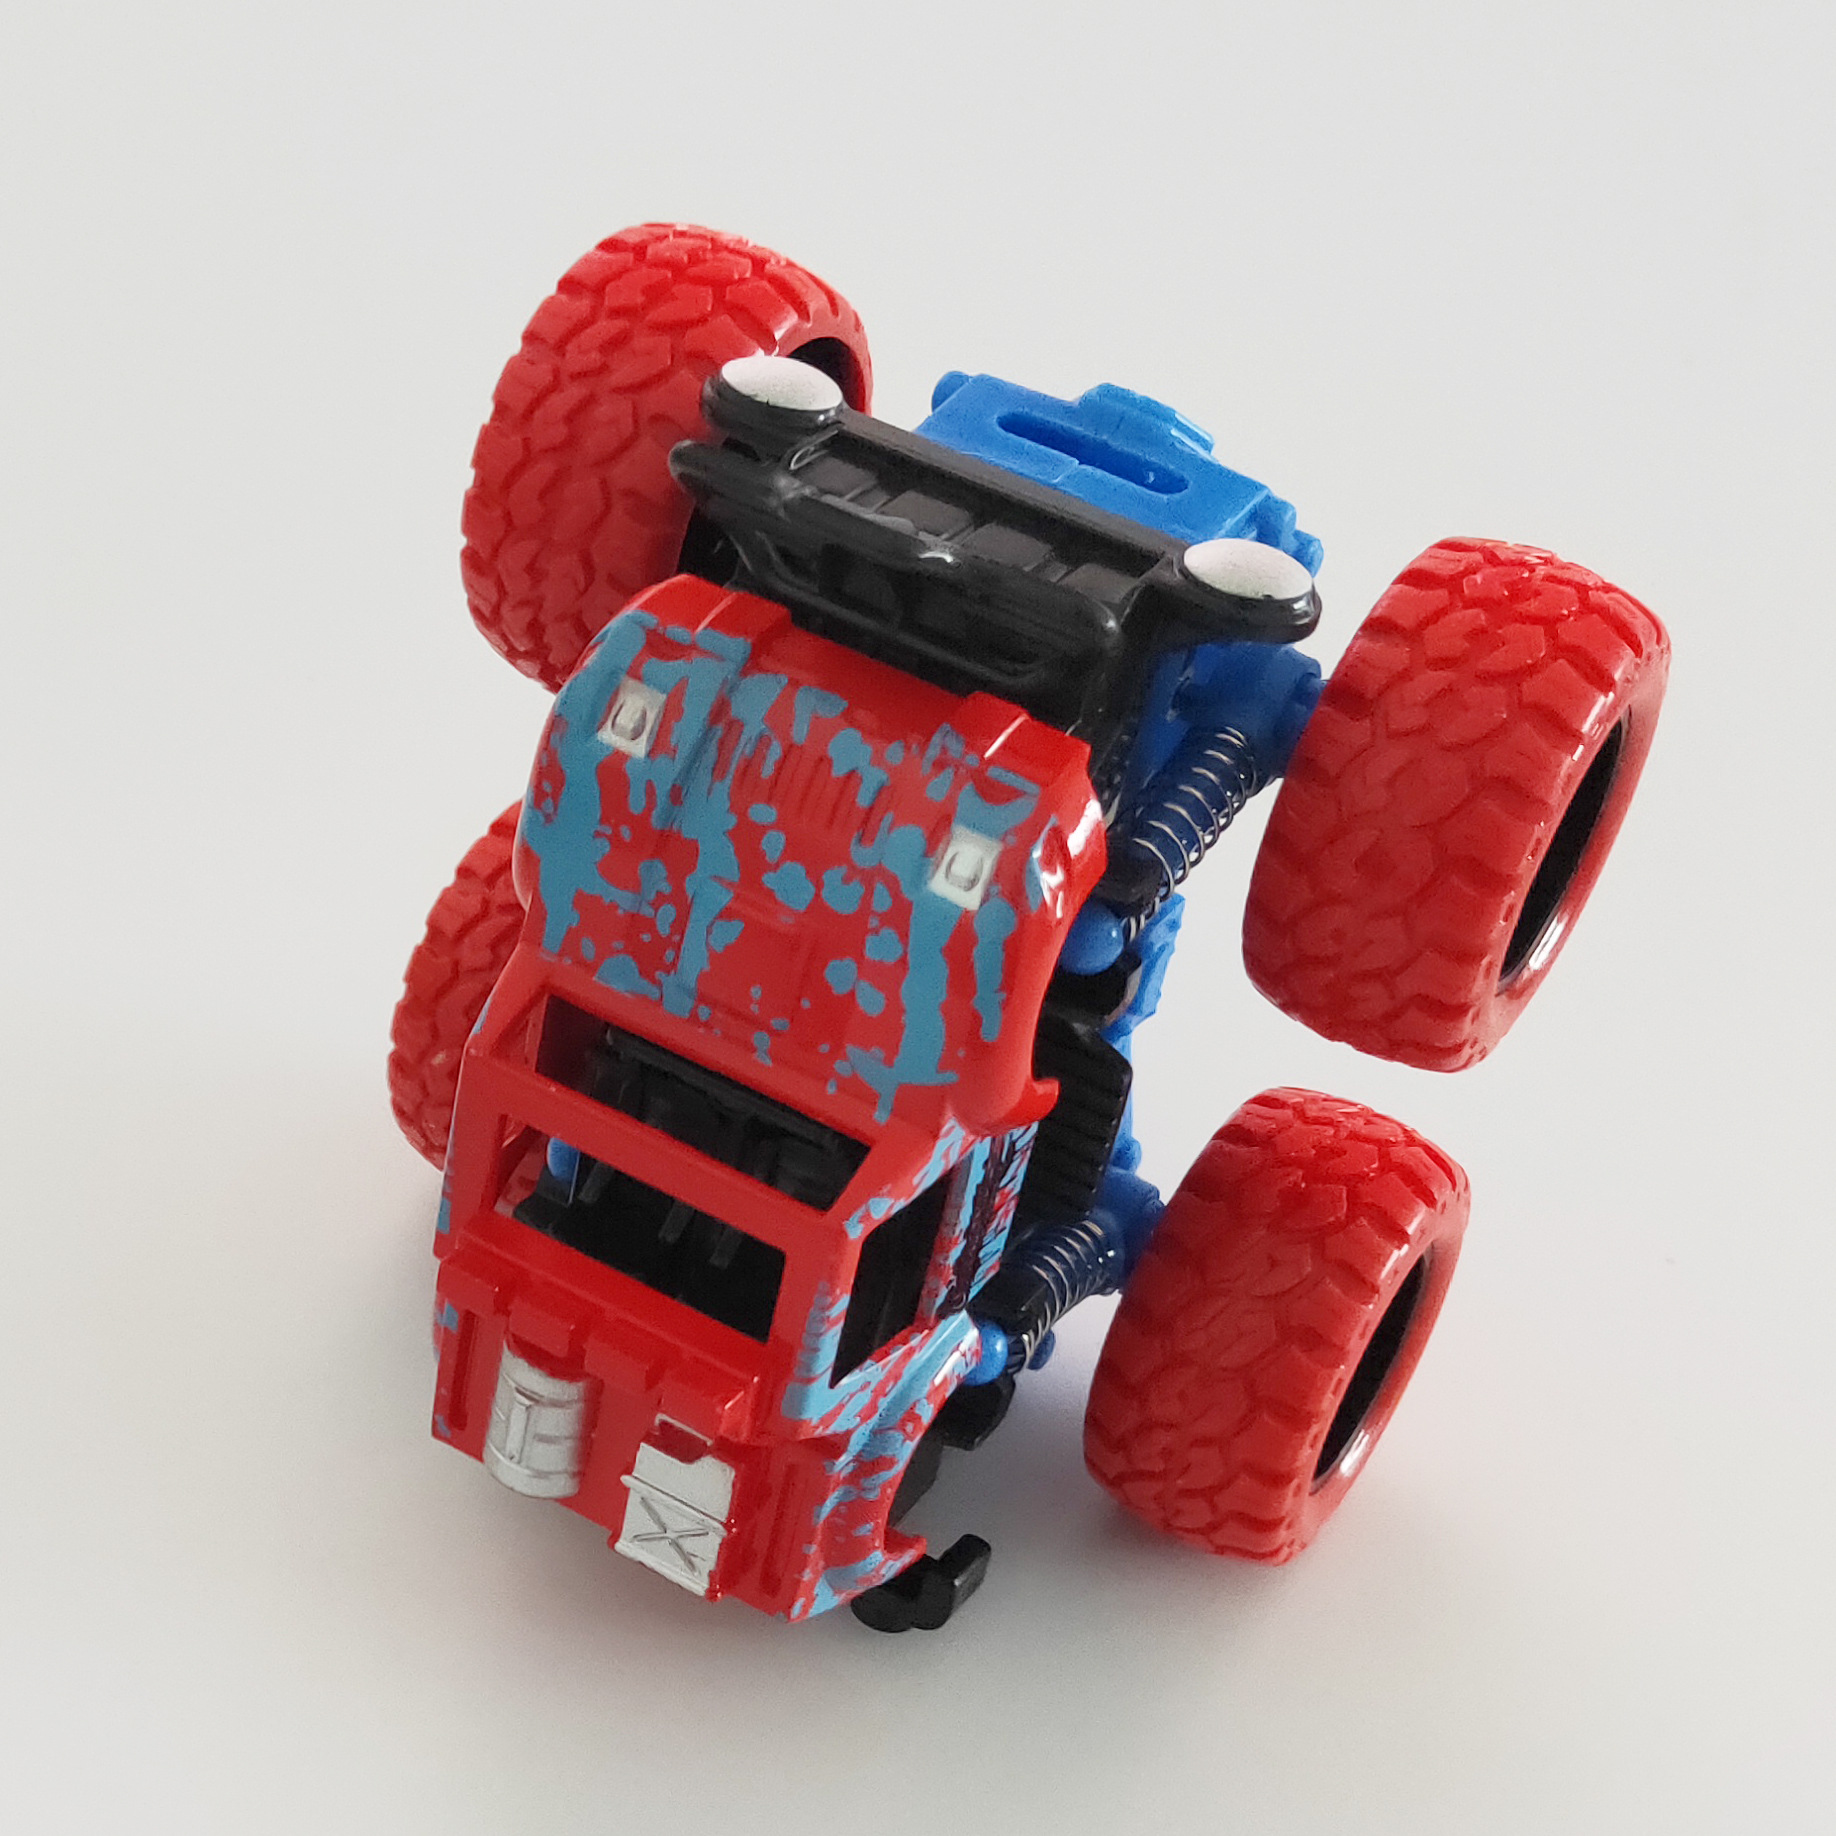 Inertial Dynamische Stunt Auto VierRad Kinder AntiHerbst Spielzeug Fahrzeugpicture3